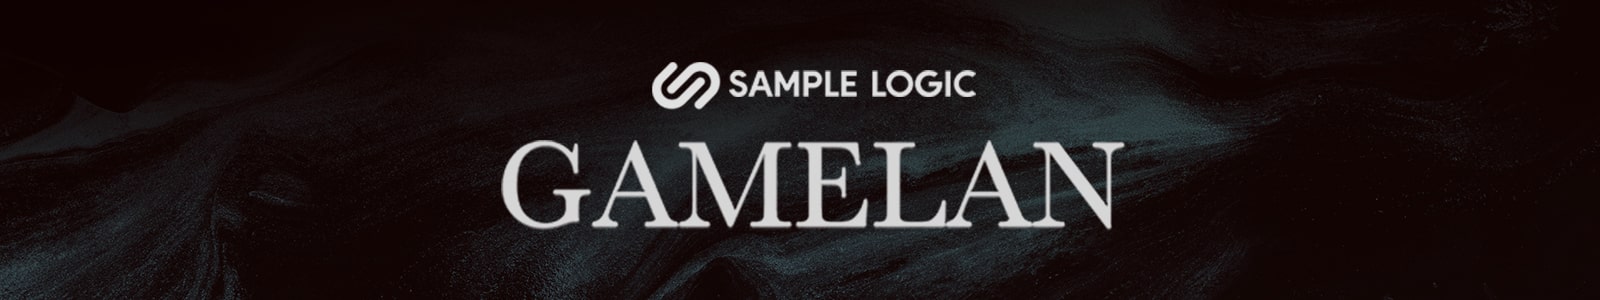 gamelan by sample logic